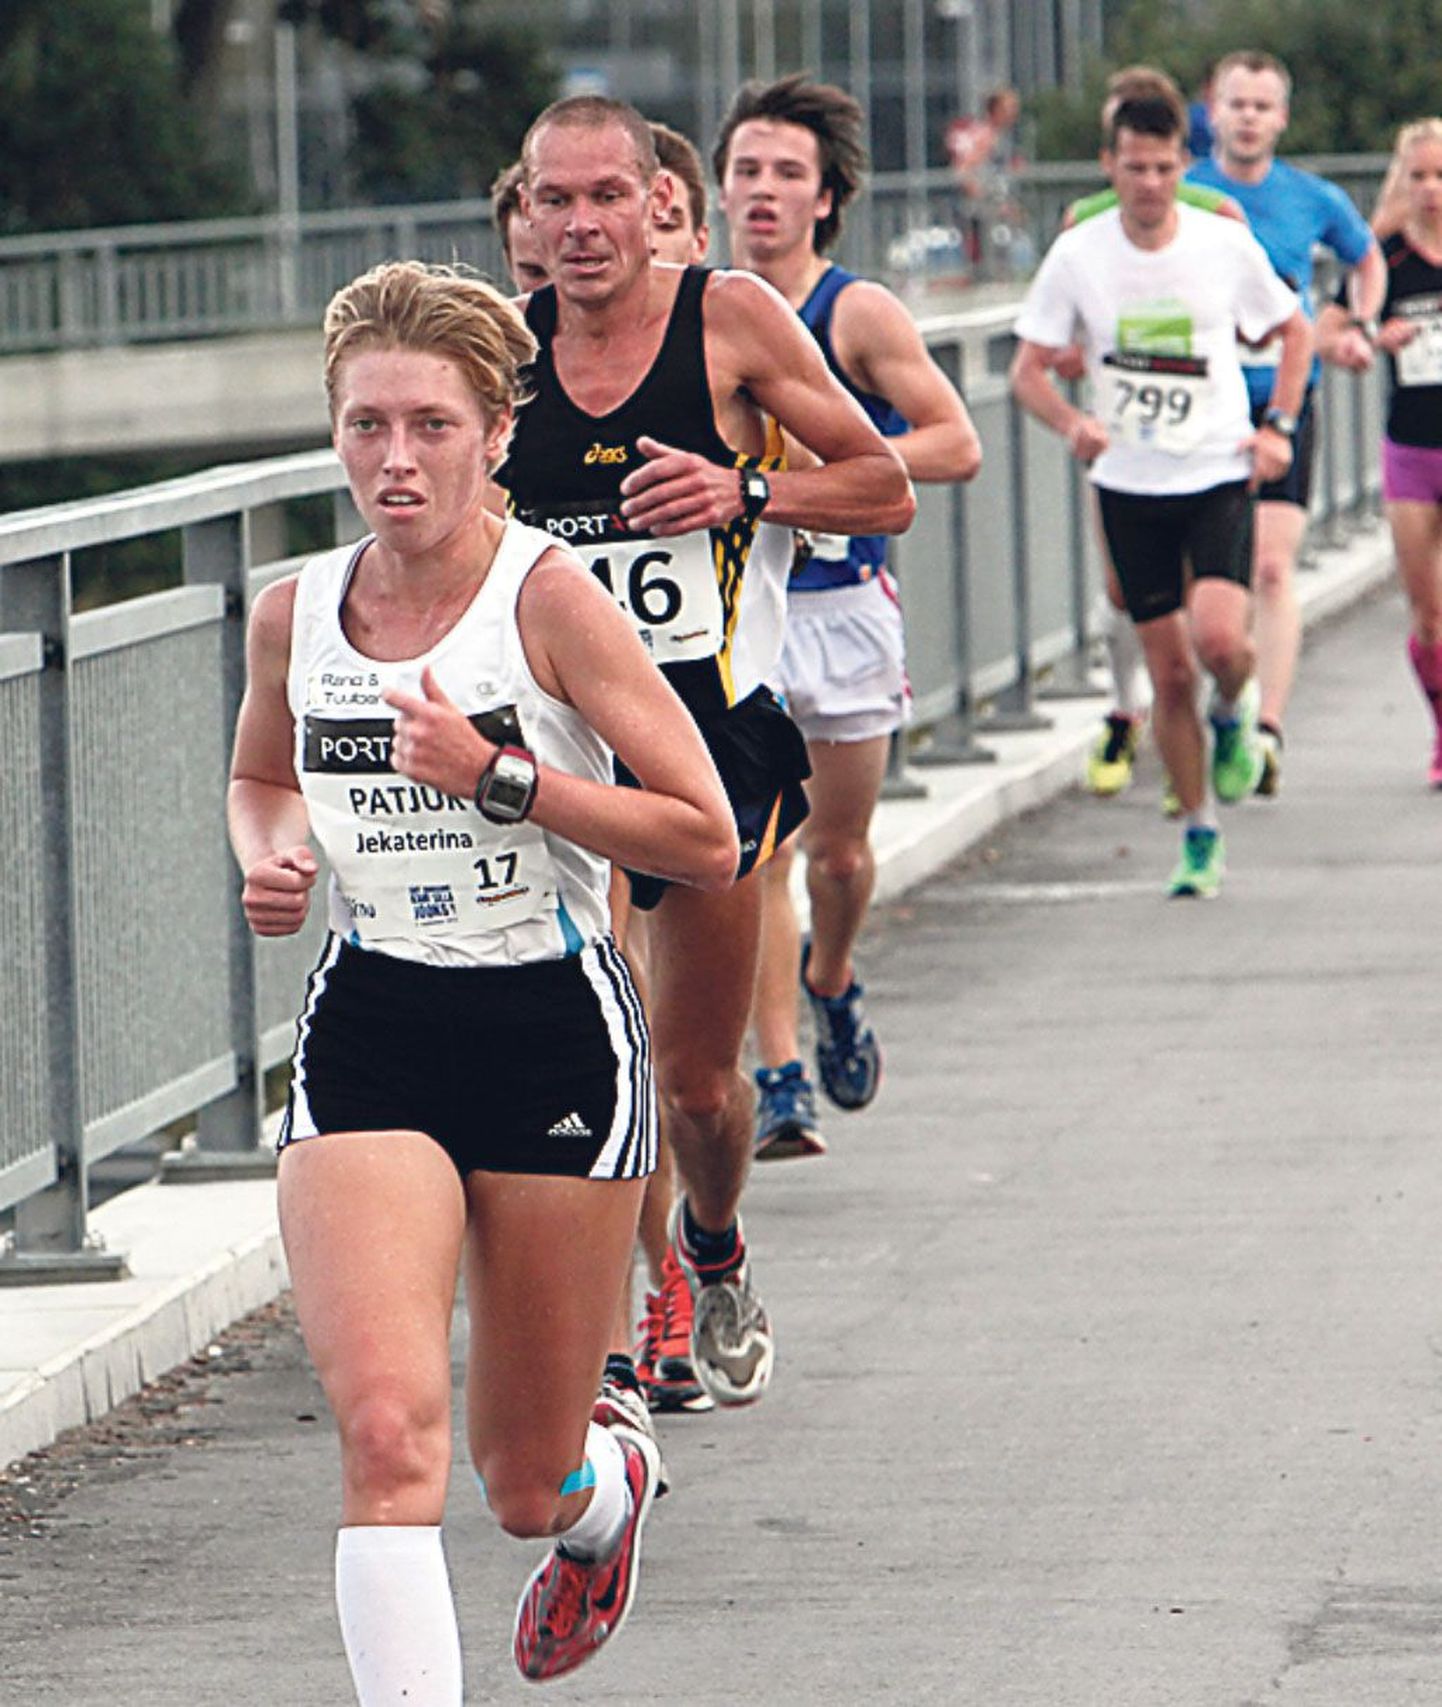 Kahe silla jooksu parim naine oli tänavu Jekaterina Patjuk, kes lõpetas üldarvestuses 25. kohal.